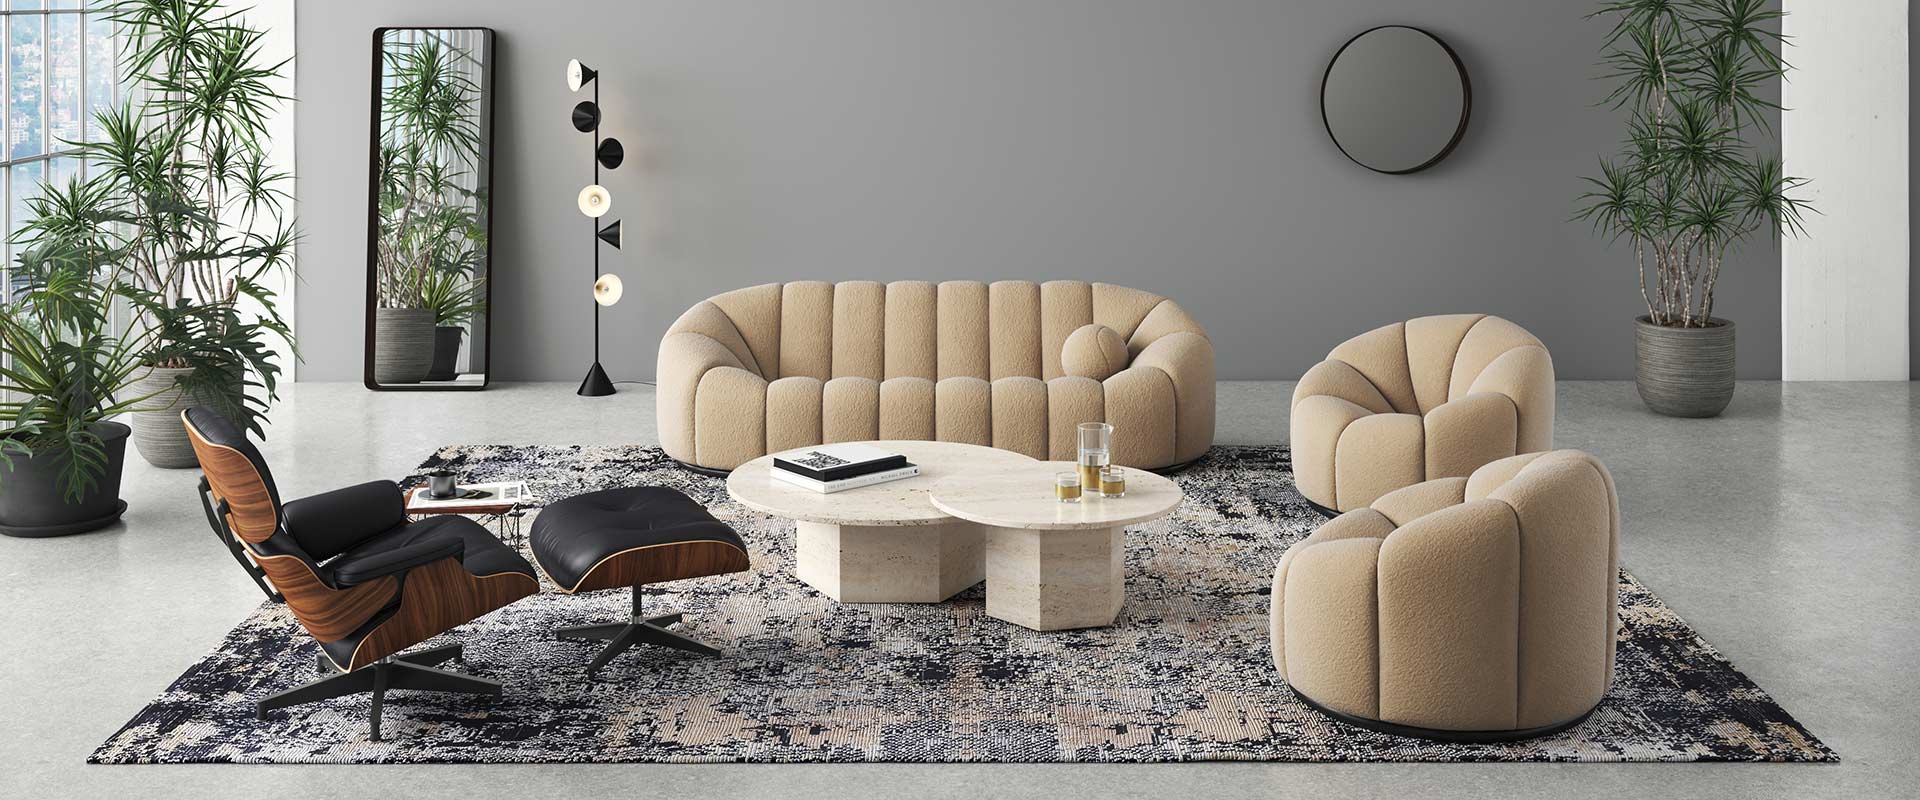 Moderne Wohnzimmereinrichtung mit beigem gerundetem Sofa und Sesseln, schwarzem Eames Lounge Chair, rundem Marmortisch, Stehlampe, großen Spiegeln, Zimmerpflanzen und gemustertem Teppich auf grauem Fußboden.